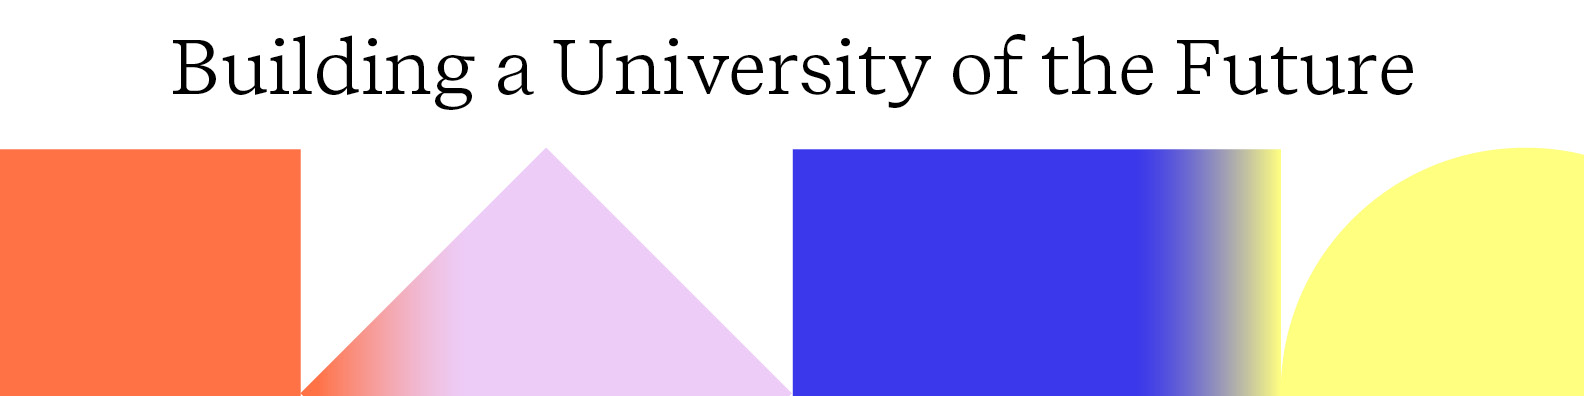 Banner UnaEuropa University of the Future